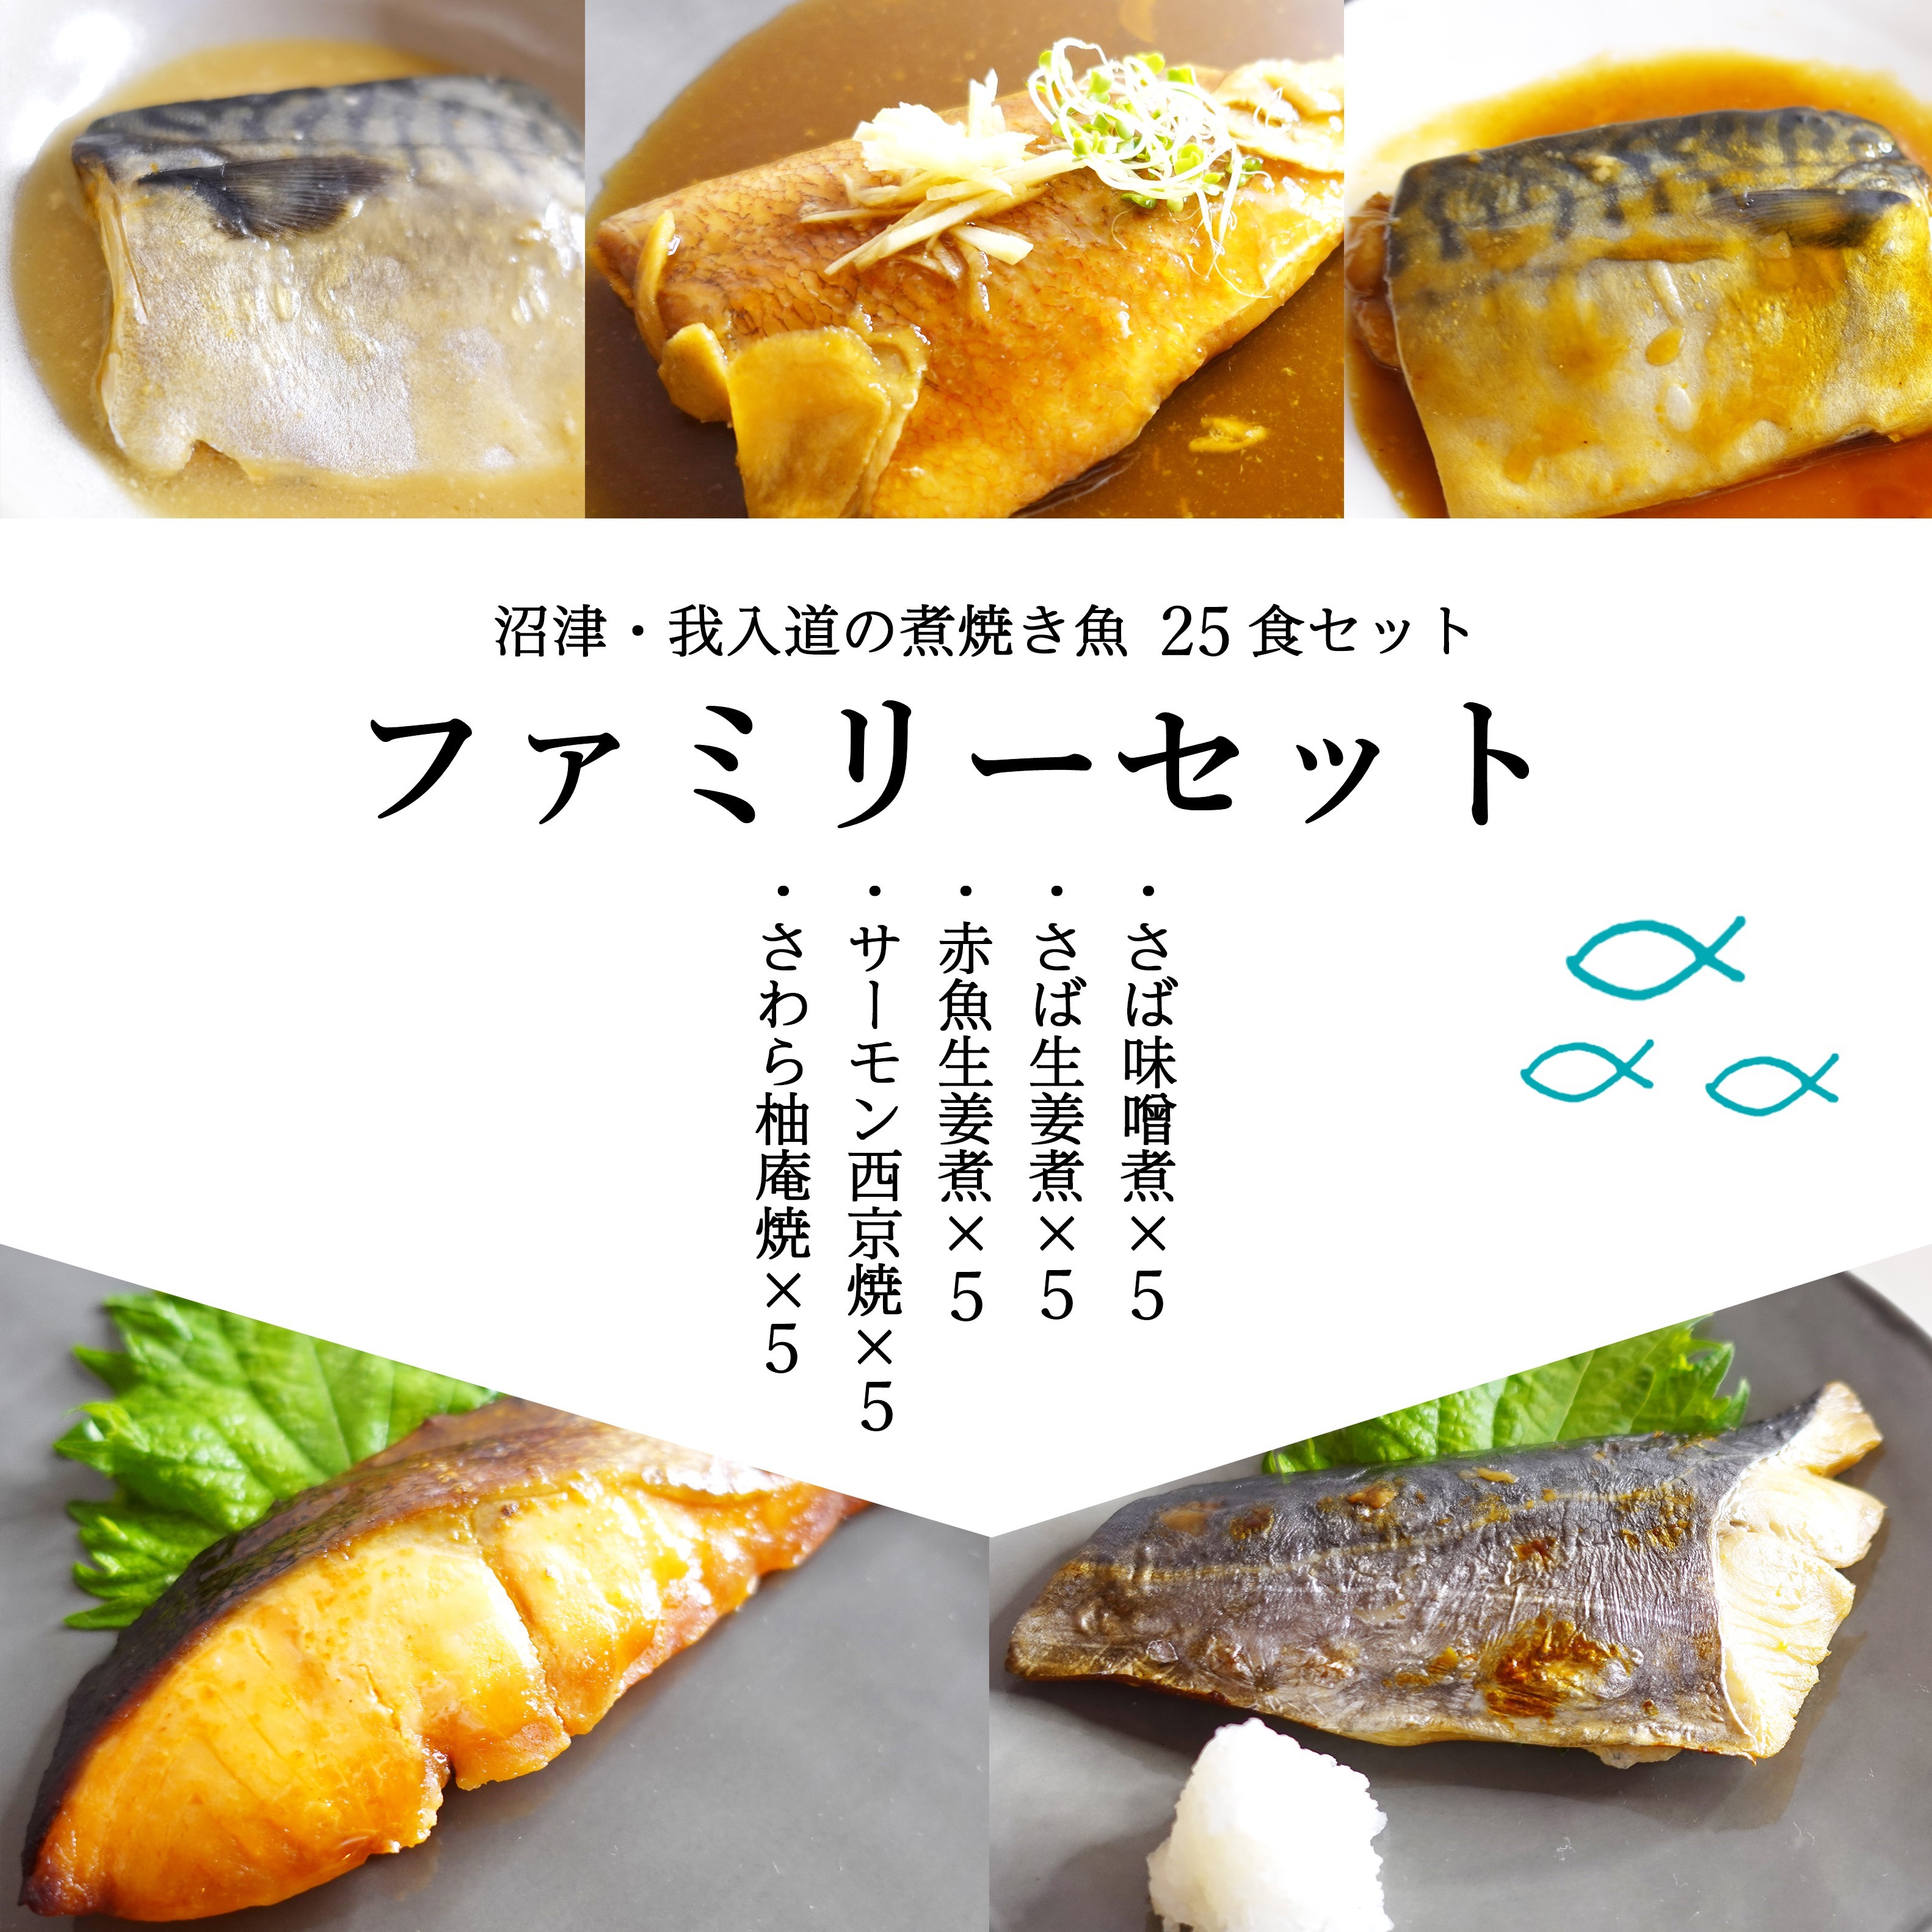 [レンジであたためるだけ]煮焼き魚ファミリーセット 25食入(5種各5食)